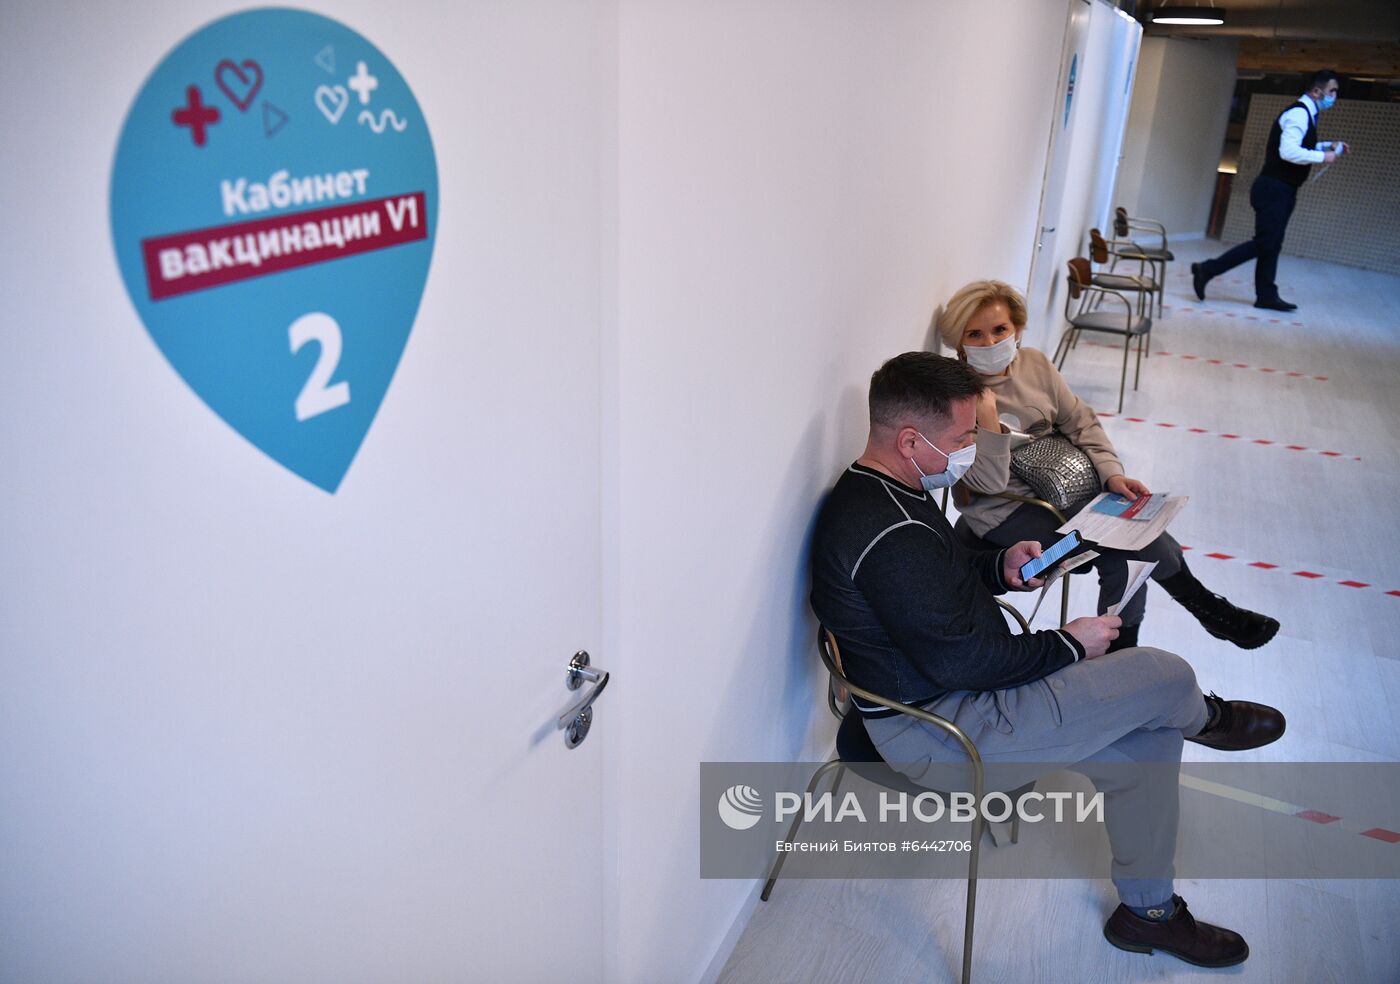 Открытие пункта вакцинации от COVID-19 на территории фудмолла "Депо.Москва"